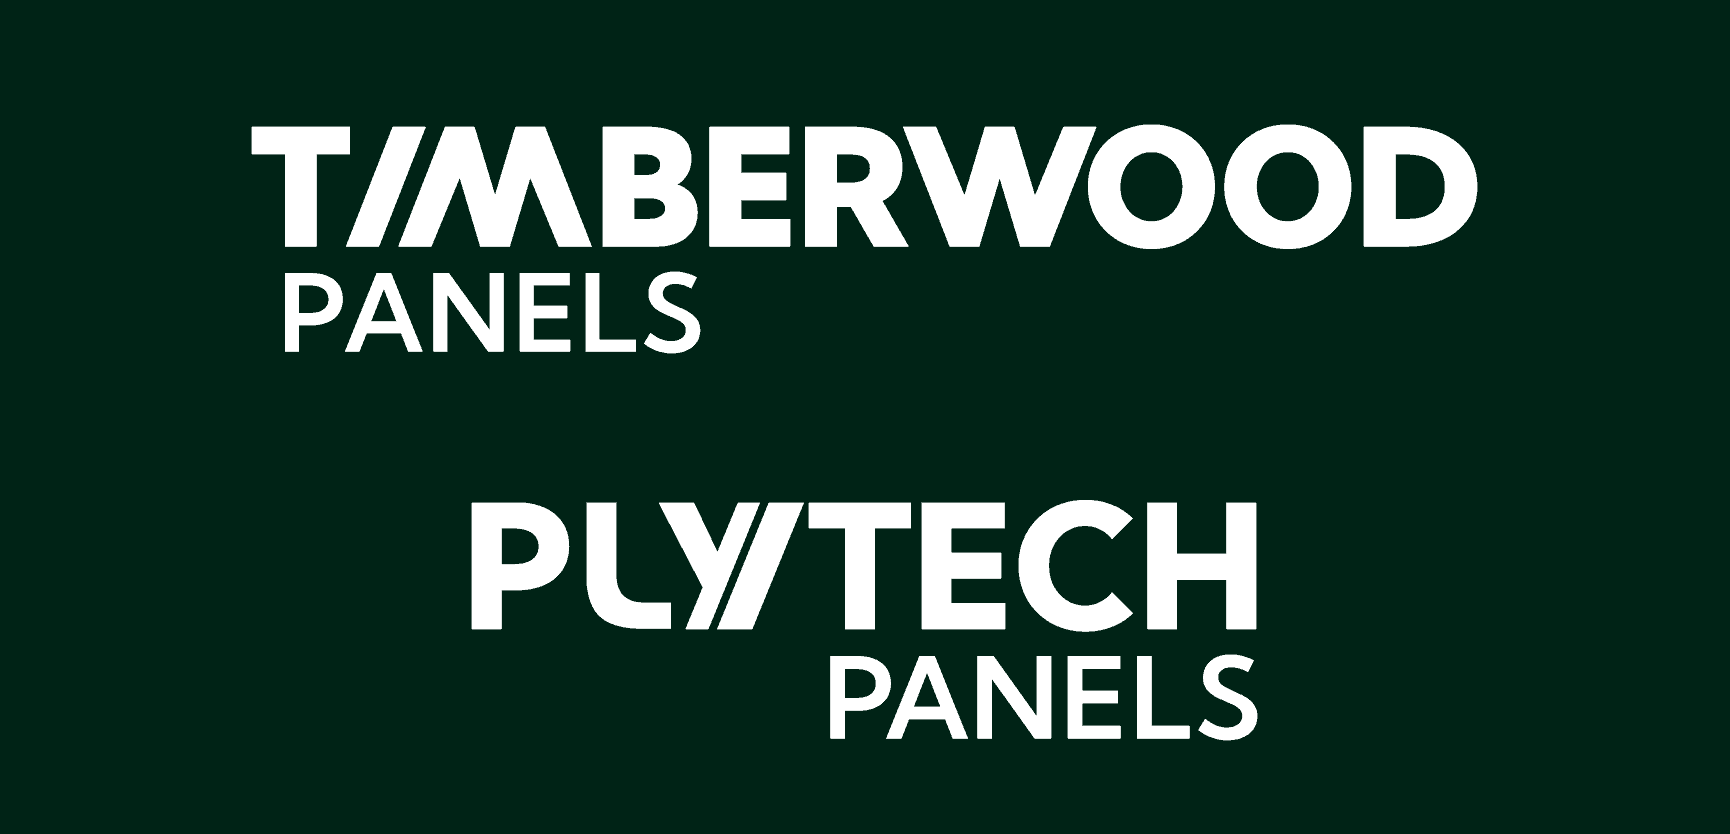 Timberwood Panels, Plytech Panels